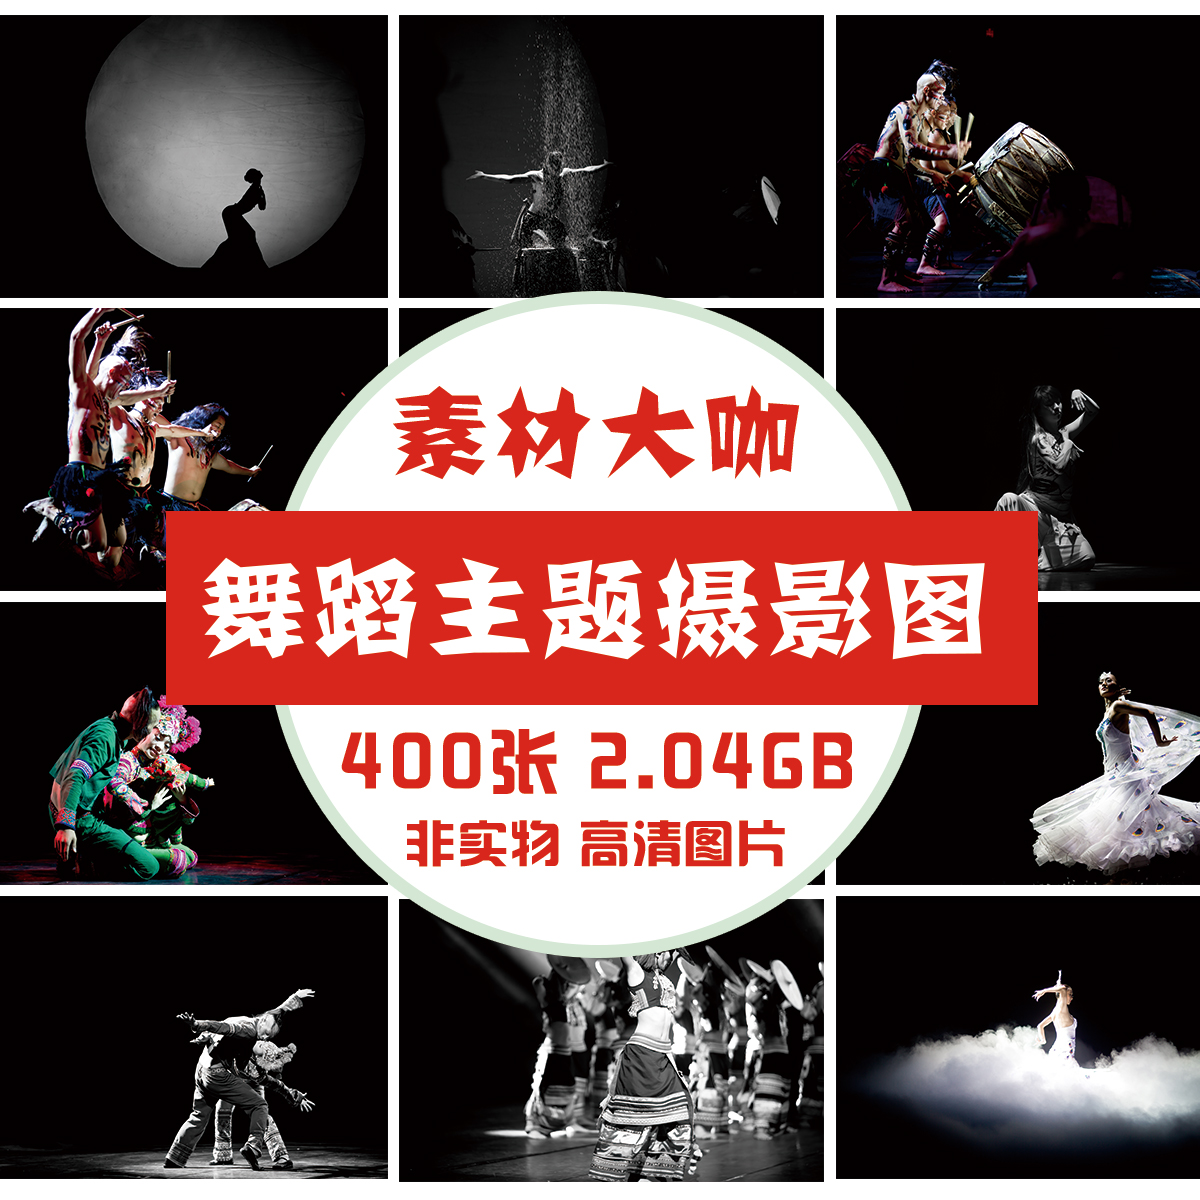 素材大咖 舞蹈主题摄影作品图片素材 云南舞蹈表演演出图